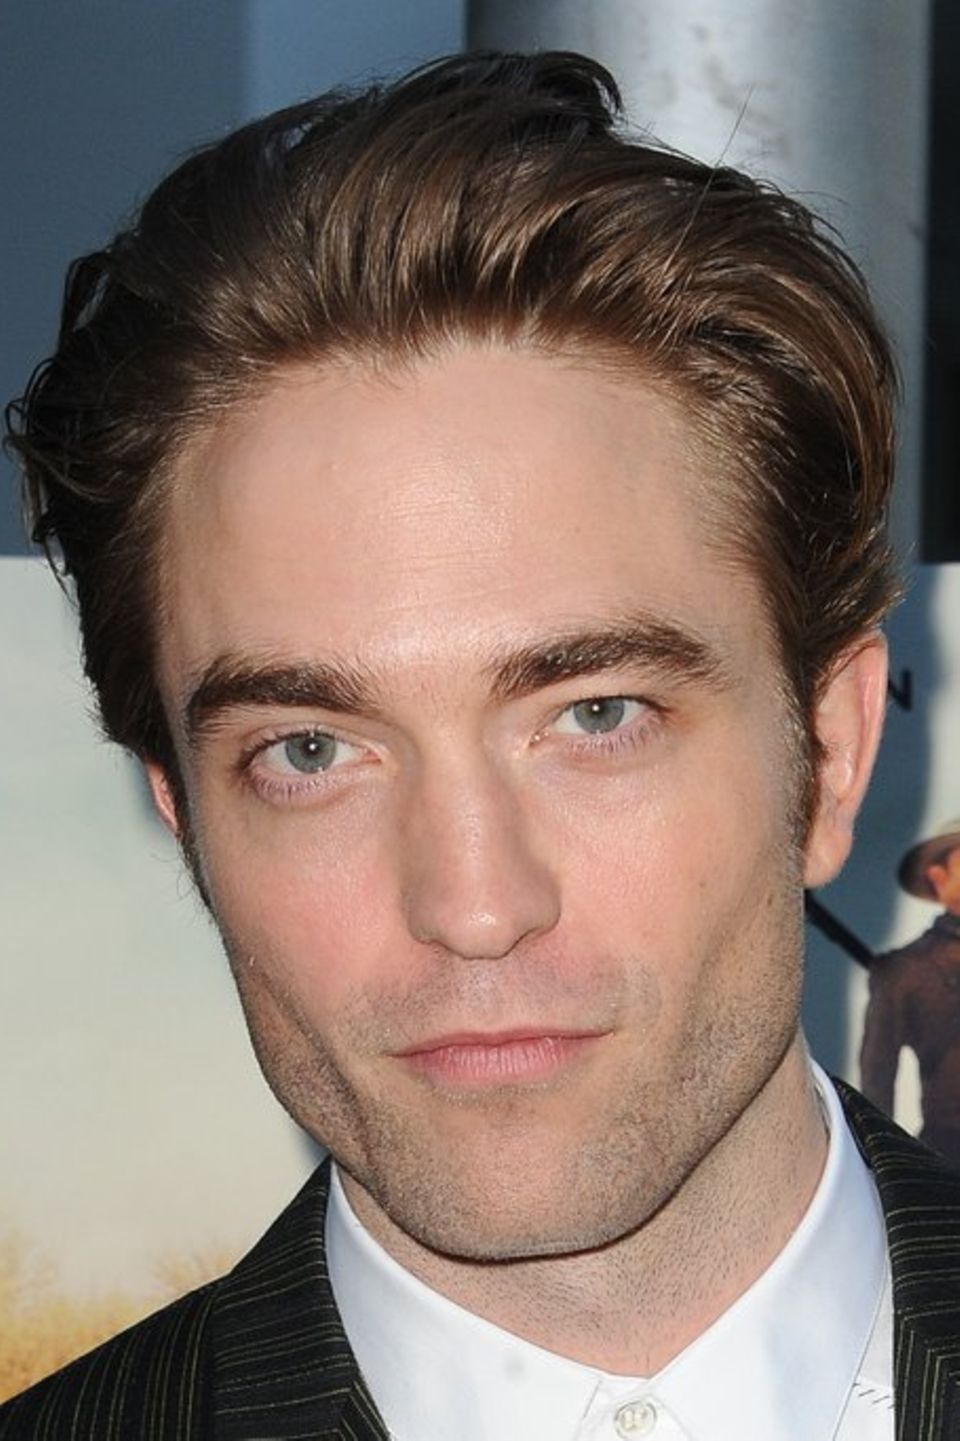 Robert Pattinson war zuletzt in "The Batman" zu sehen.